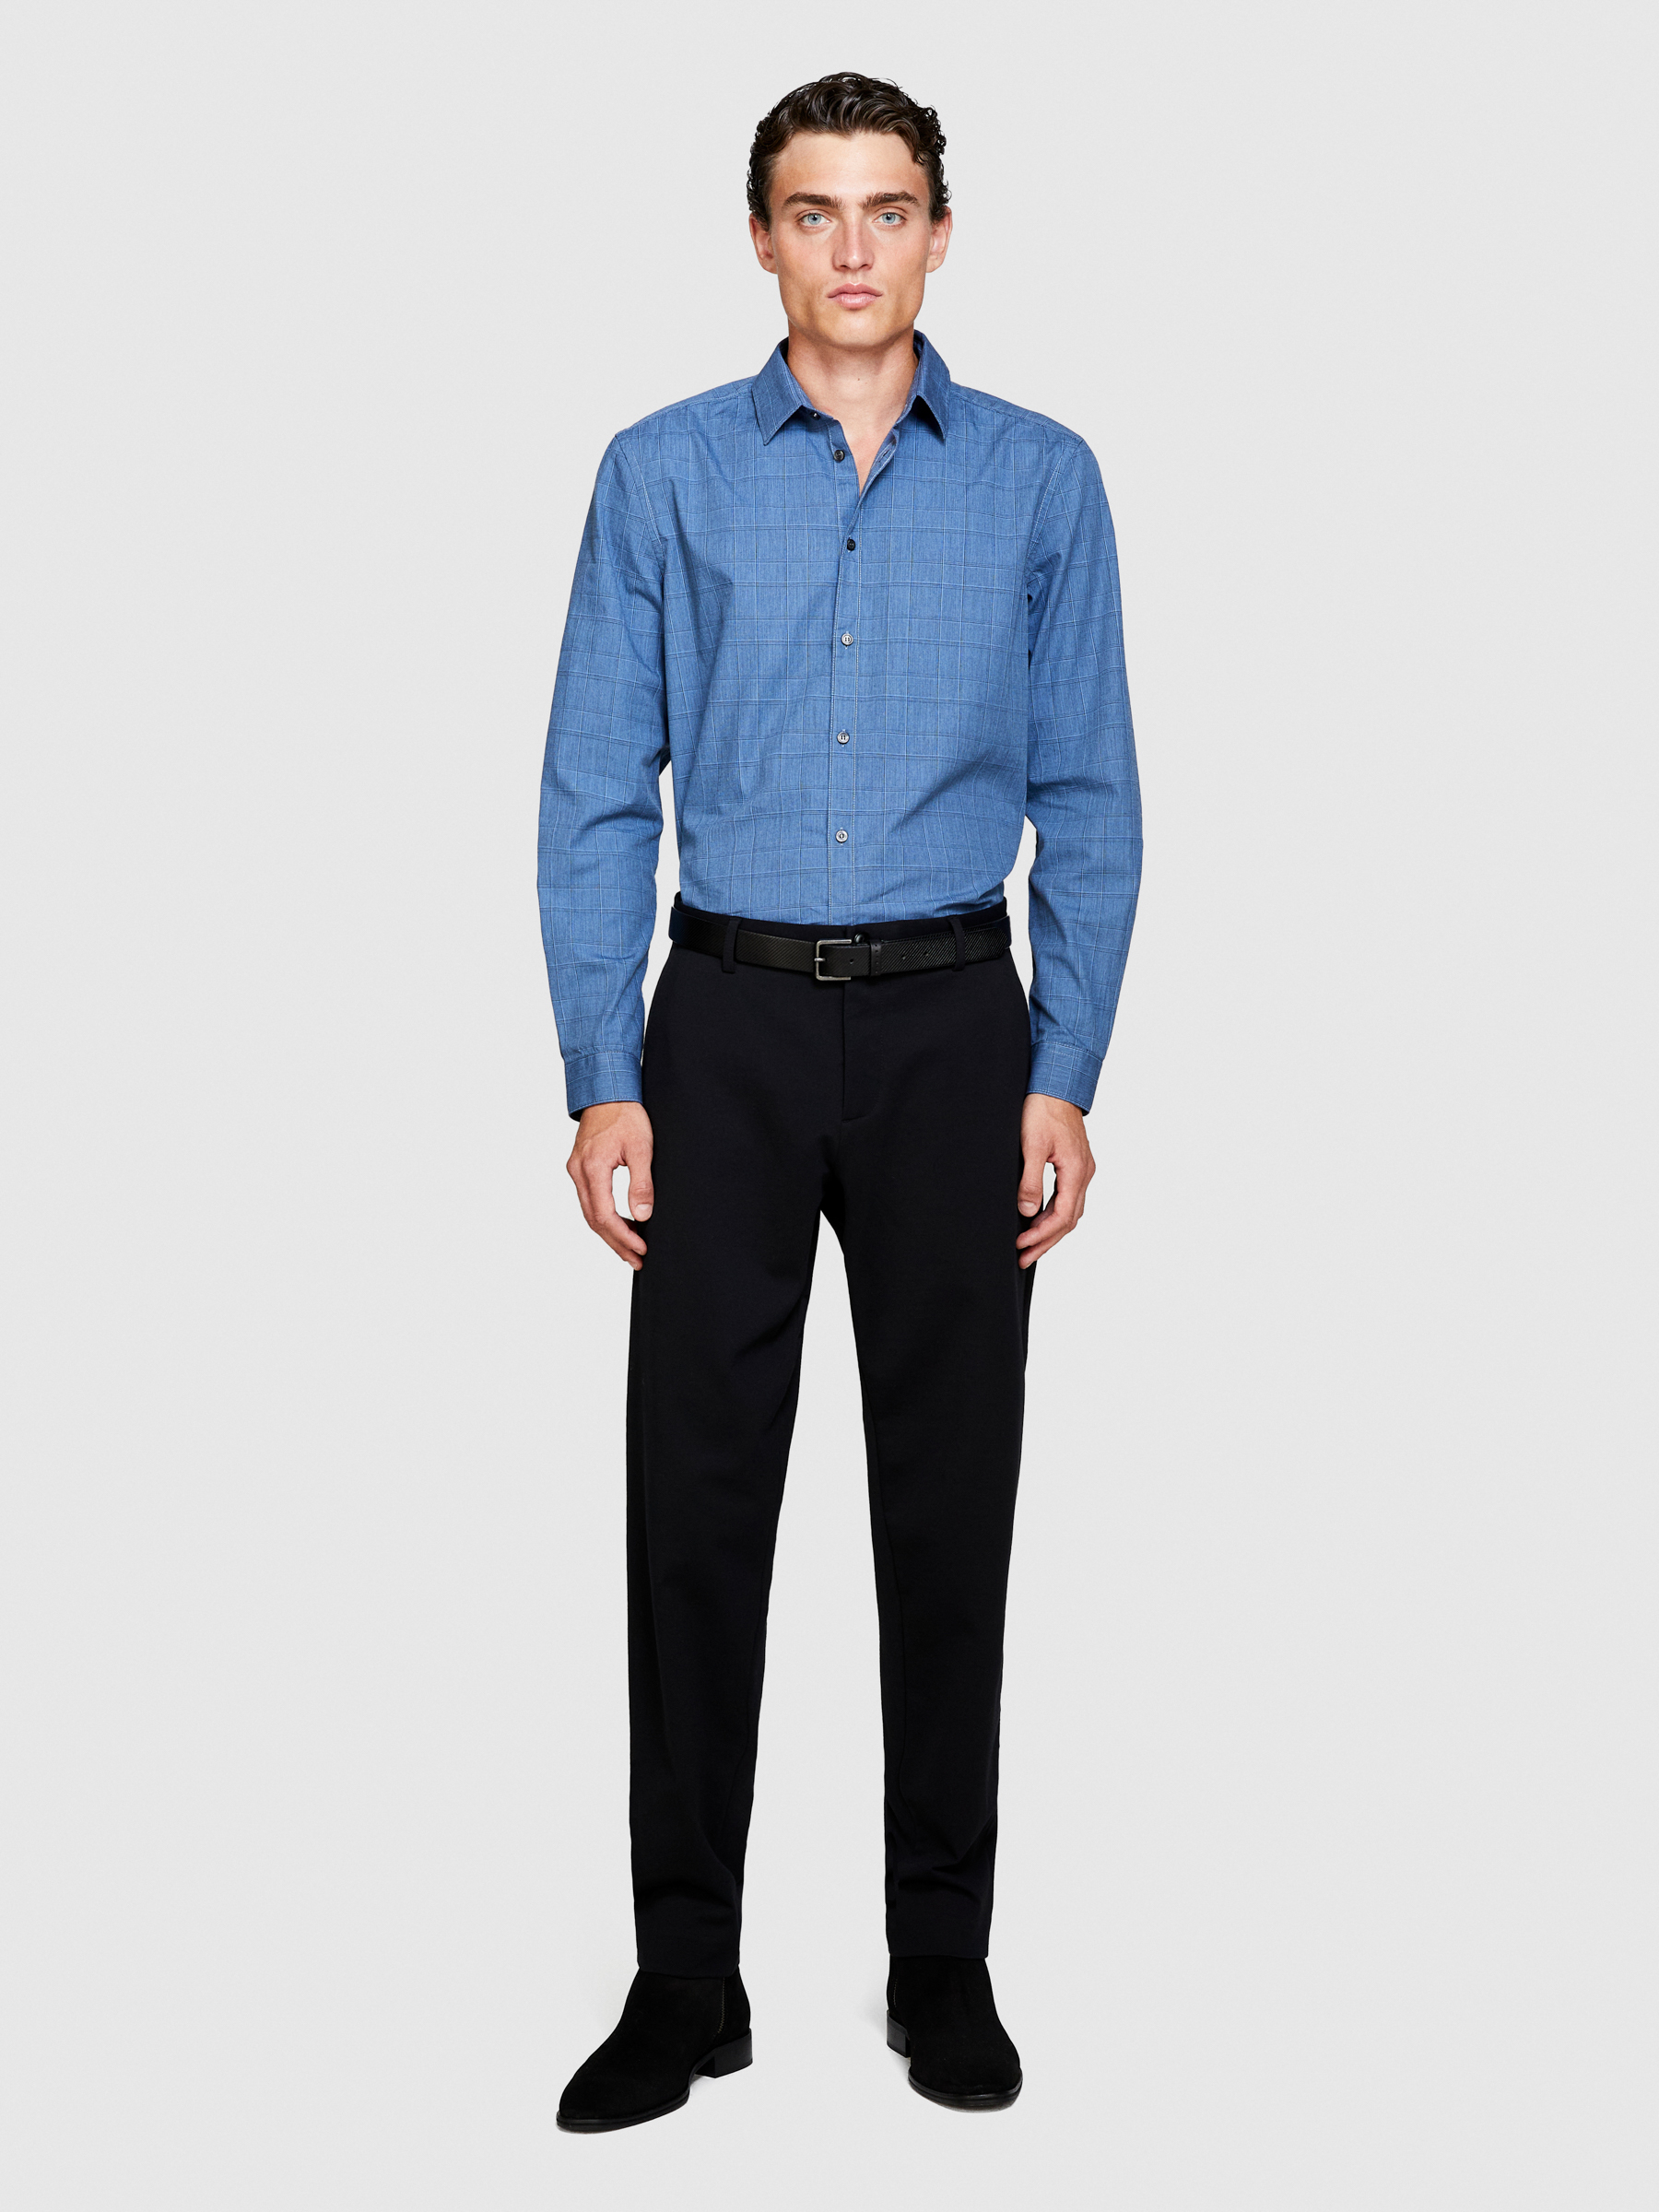 Sisley - Yarn Dyed Shirt, Man, Blue, Size: XL